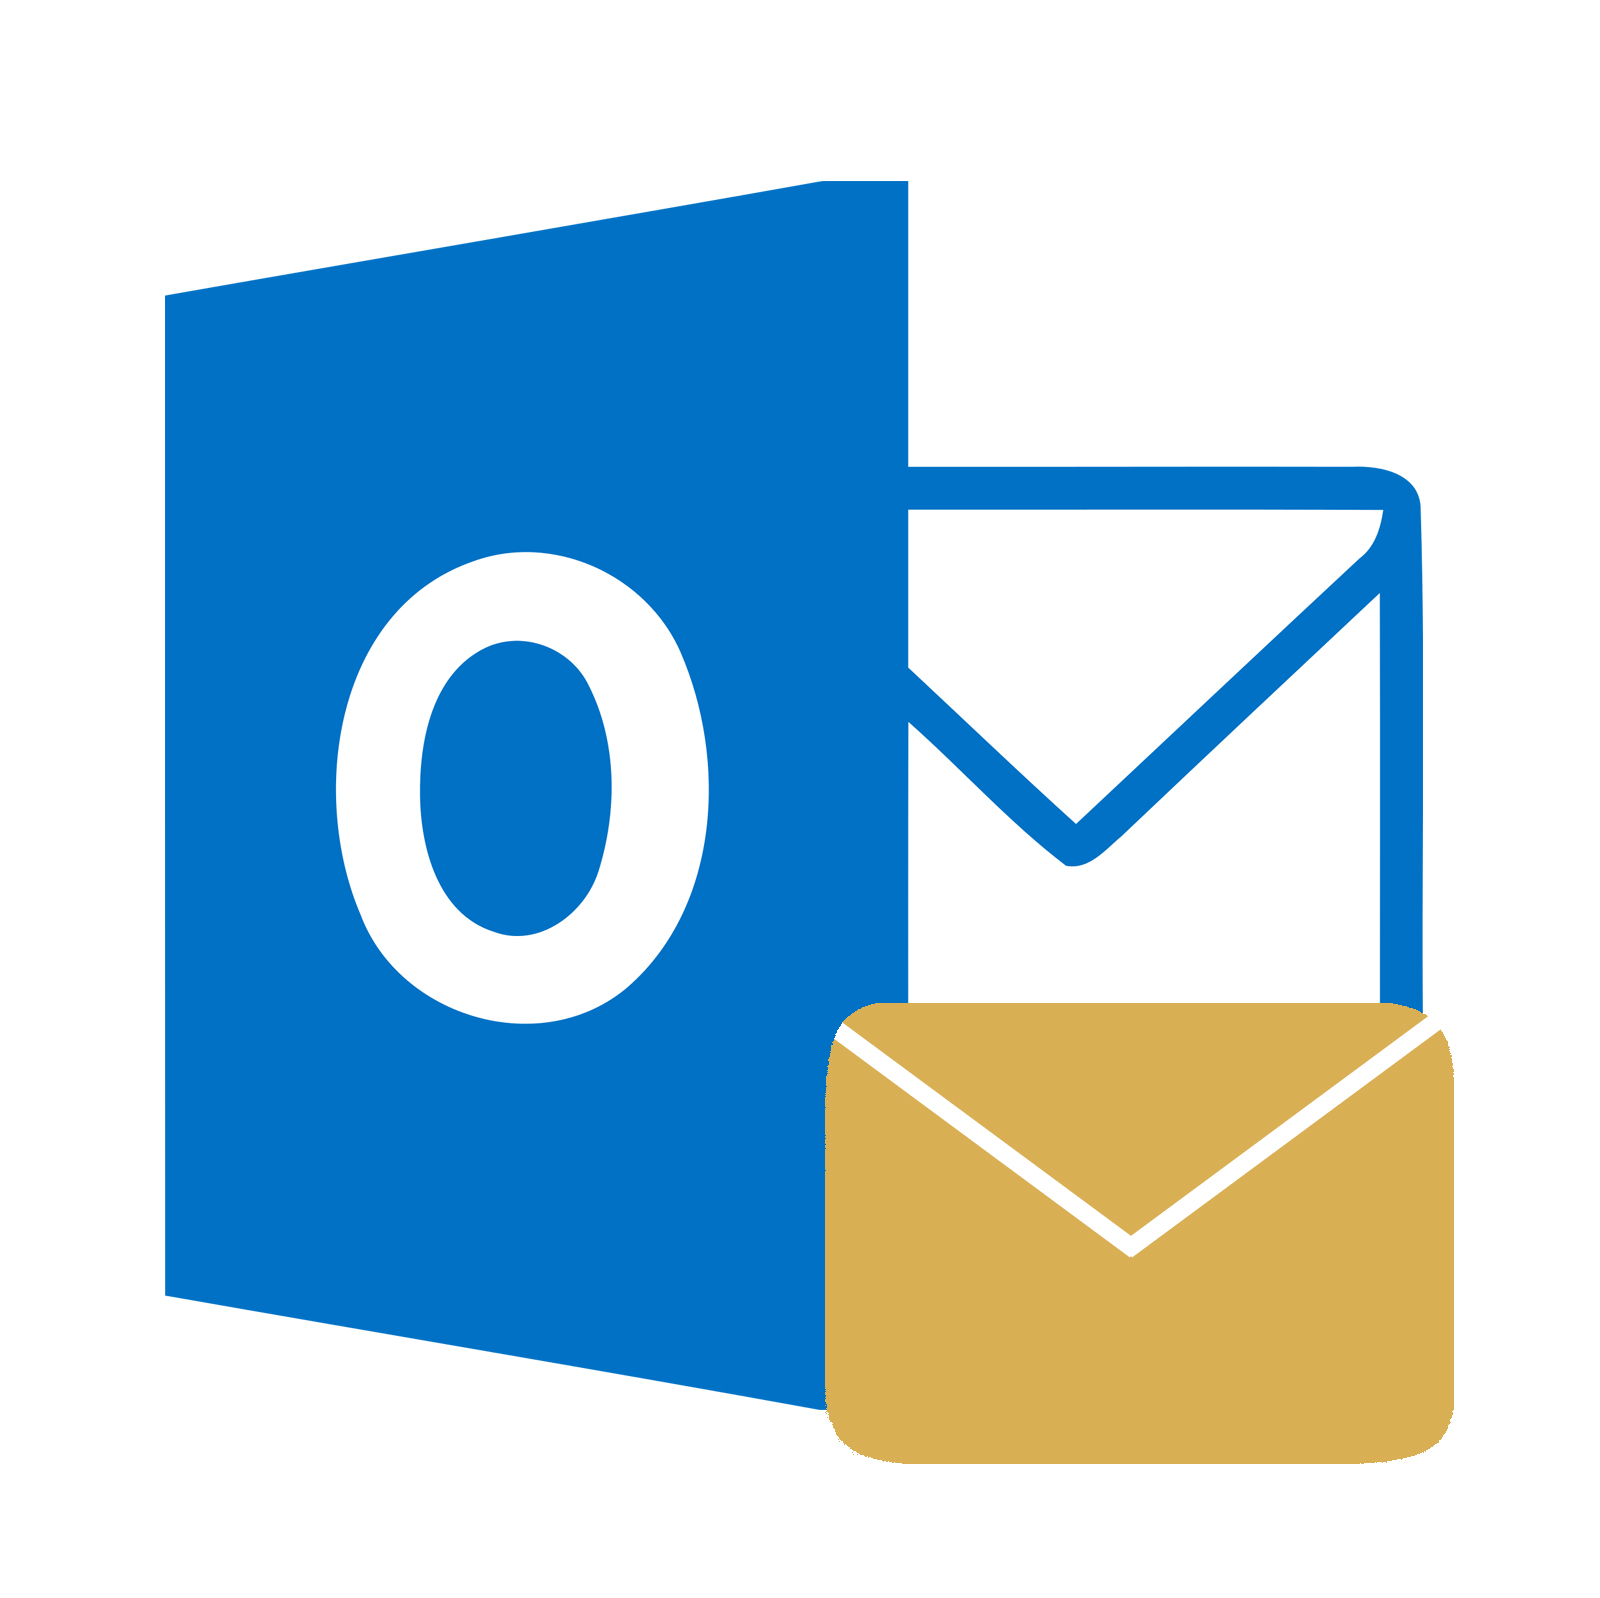 Outlook-logo-200x200.jpg